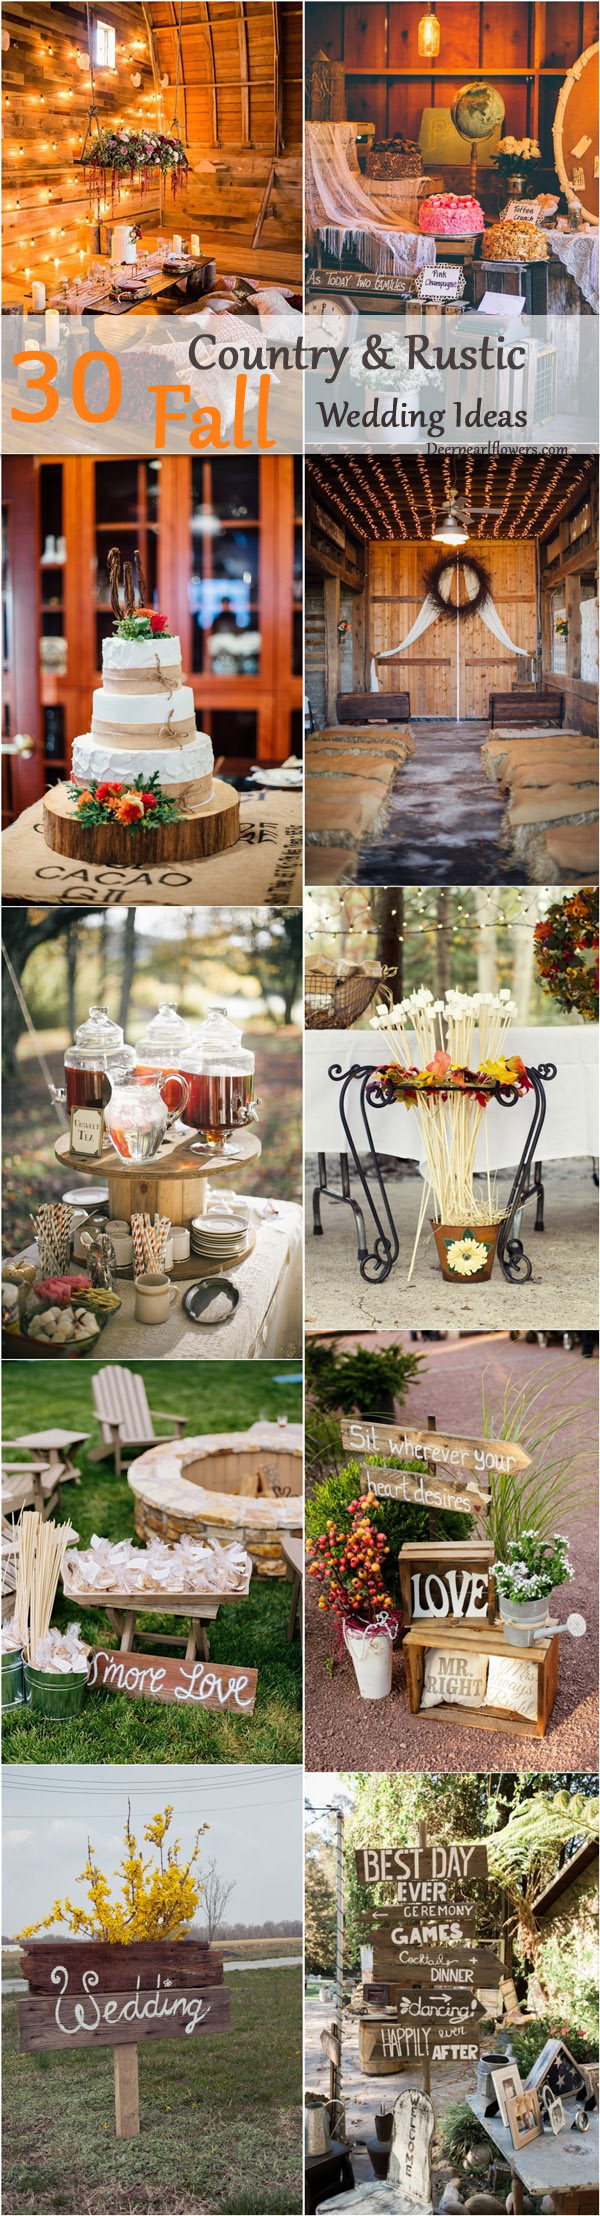 Rustic country wedding ideas - fall wedding decor ideas